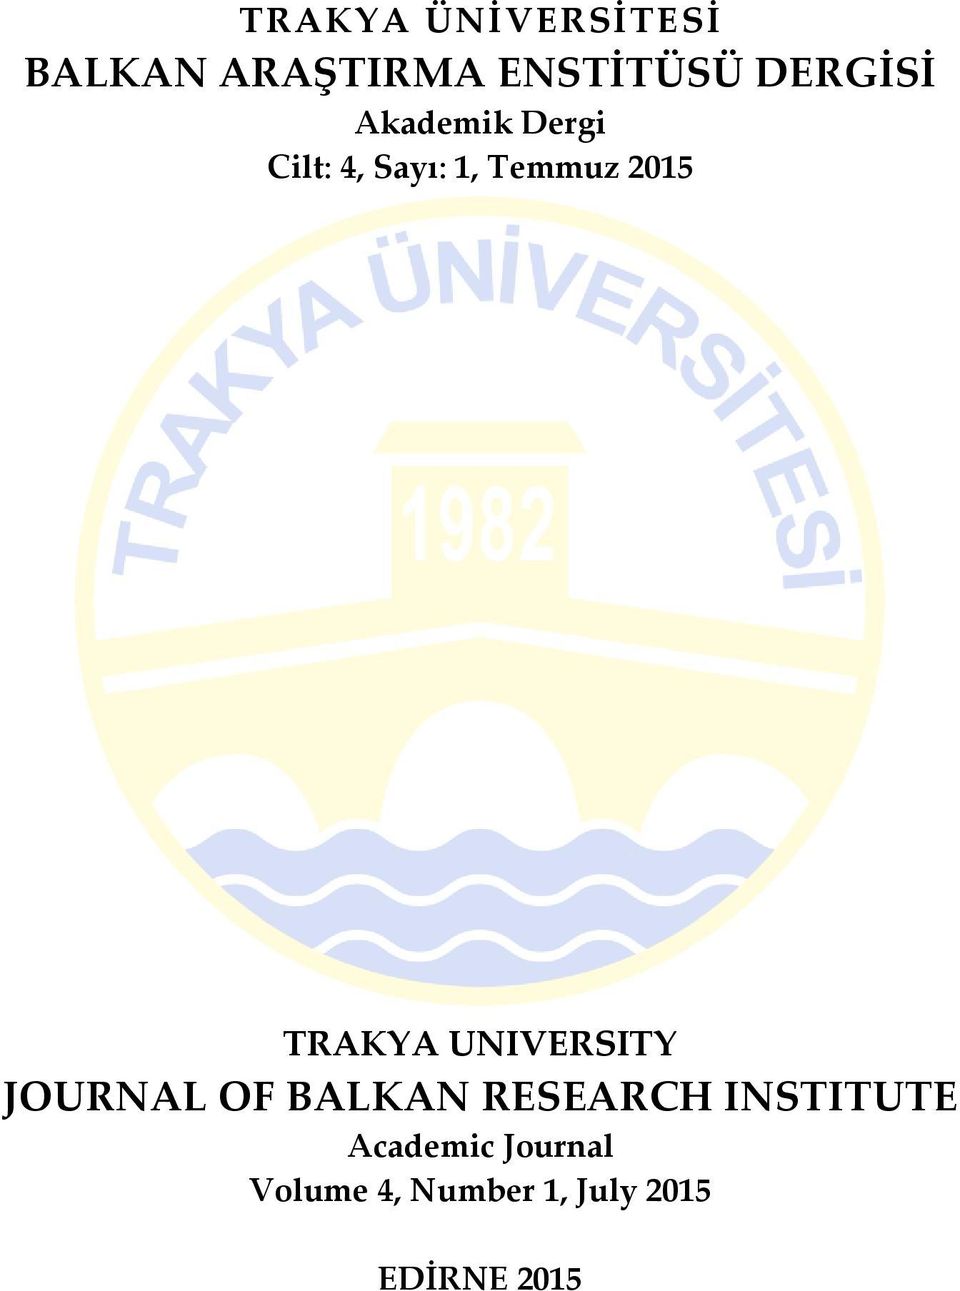 TRAKYA UNIVERSITY JOURNAL OF BALKAN RESEARCH